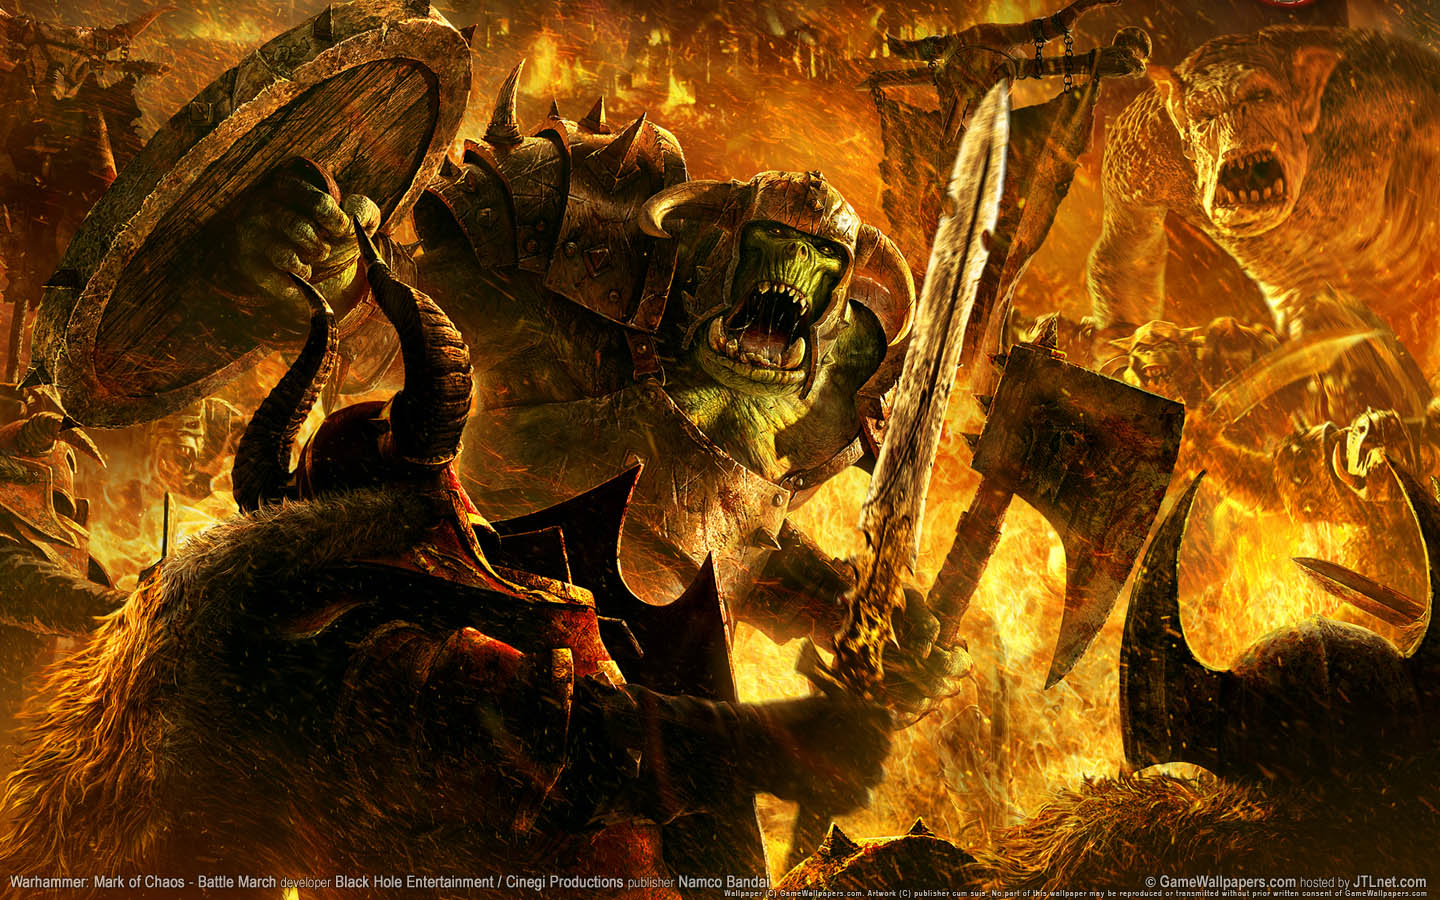 Warhammer: Mark of Chaos - Battle March fond d'cran 03 1440x900